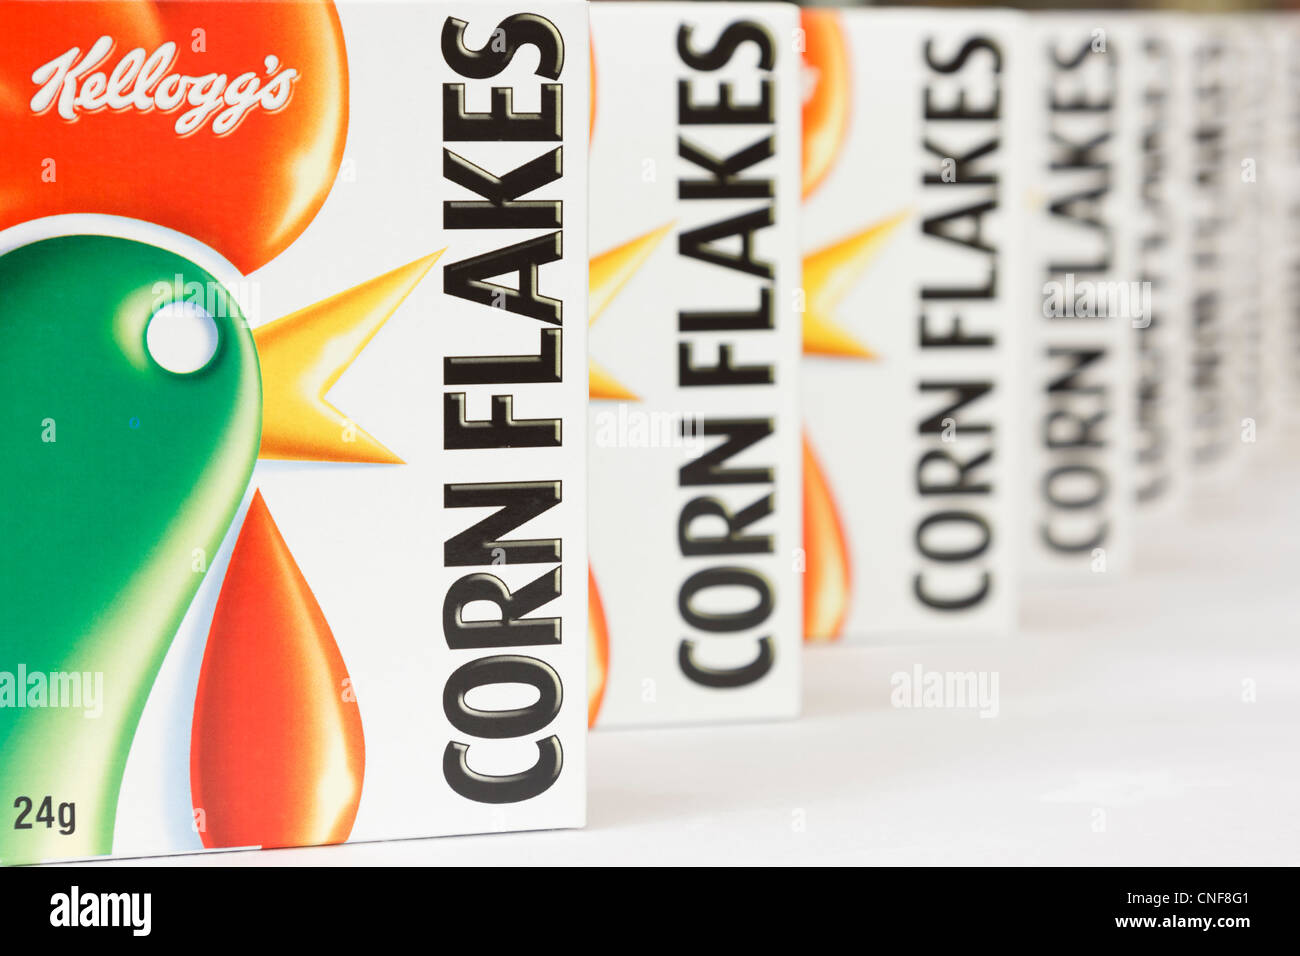 Pacchetti di Kellogg's Corn Flakes cereali per la colazione focalizzata sulla scatola anteriore. Inghilterra, Regno Unito Foto Stock